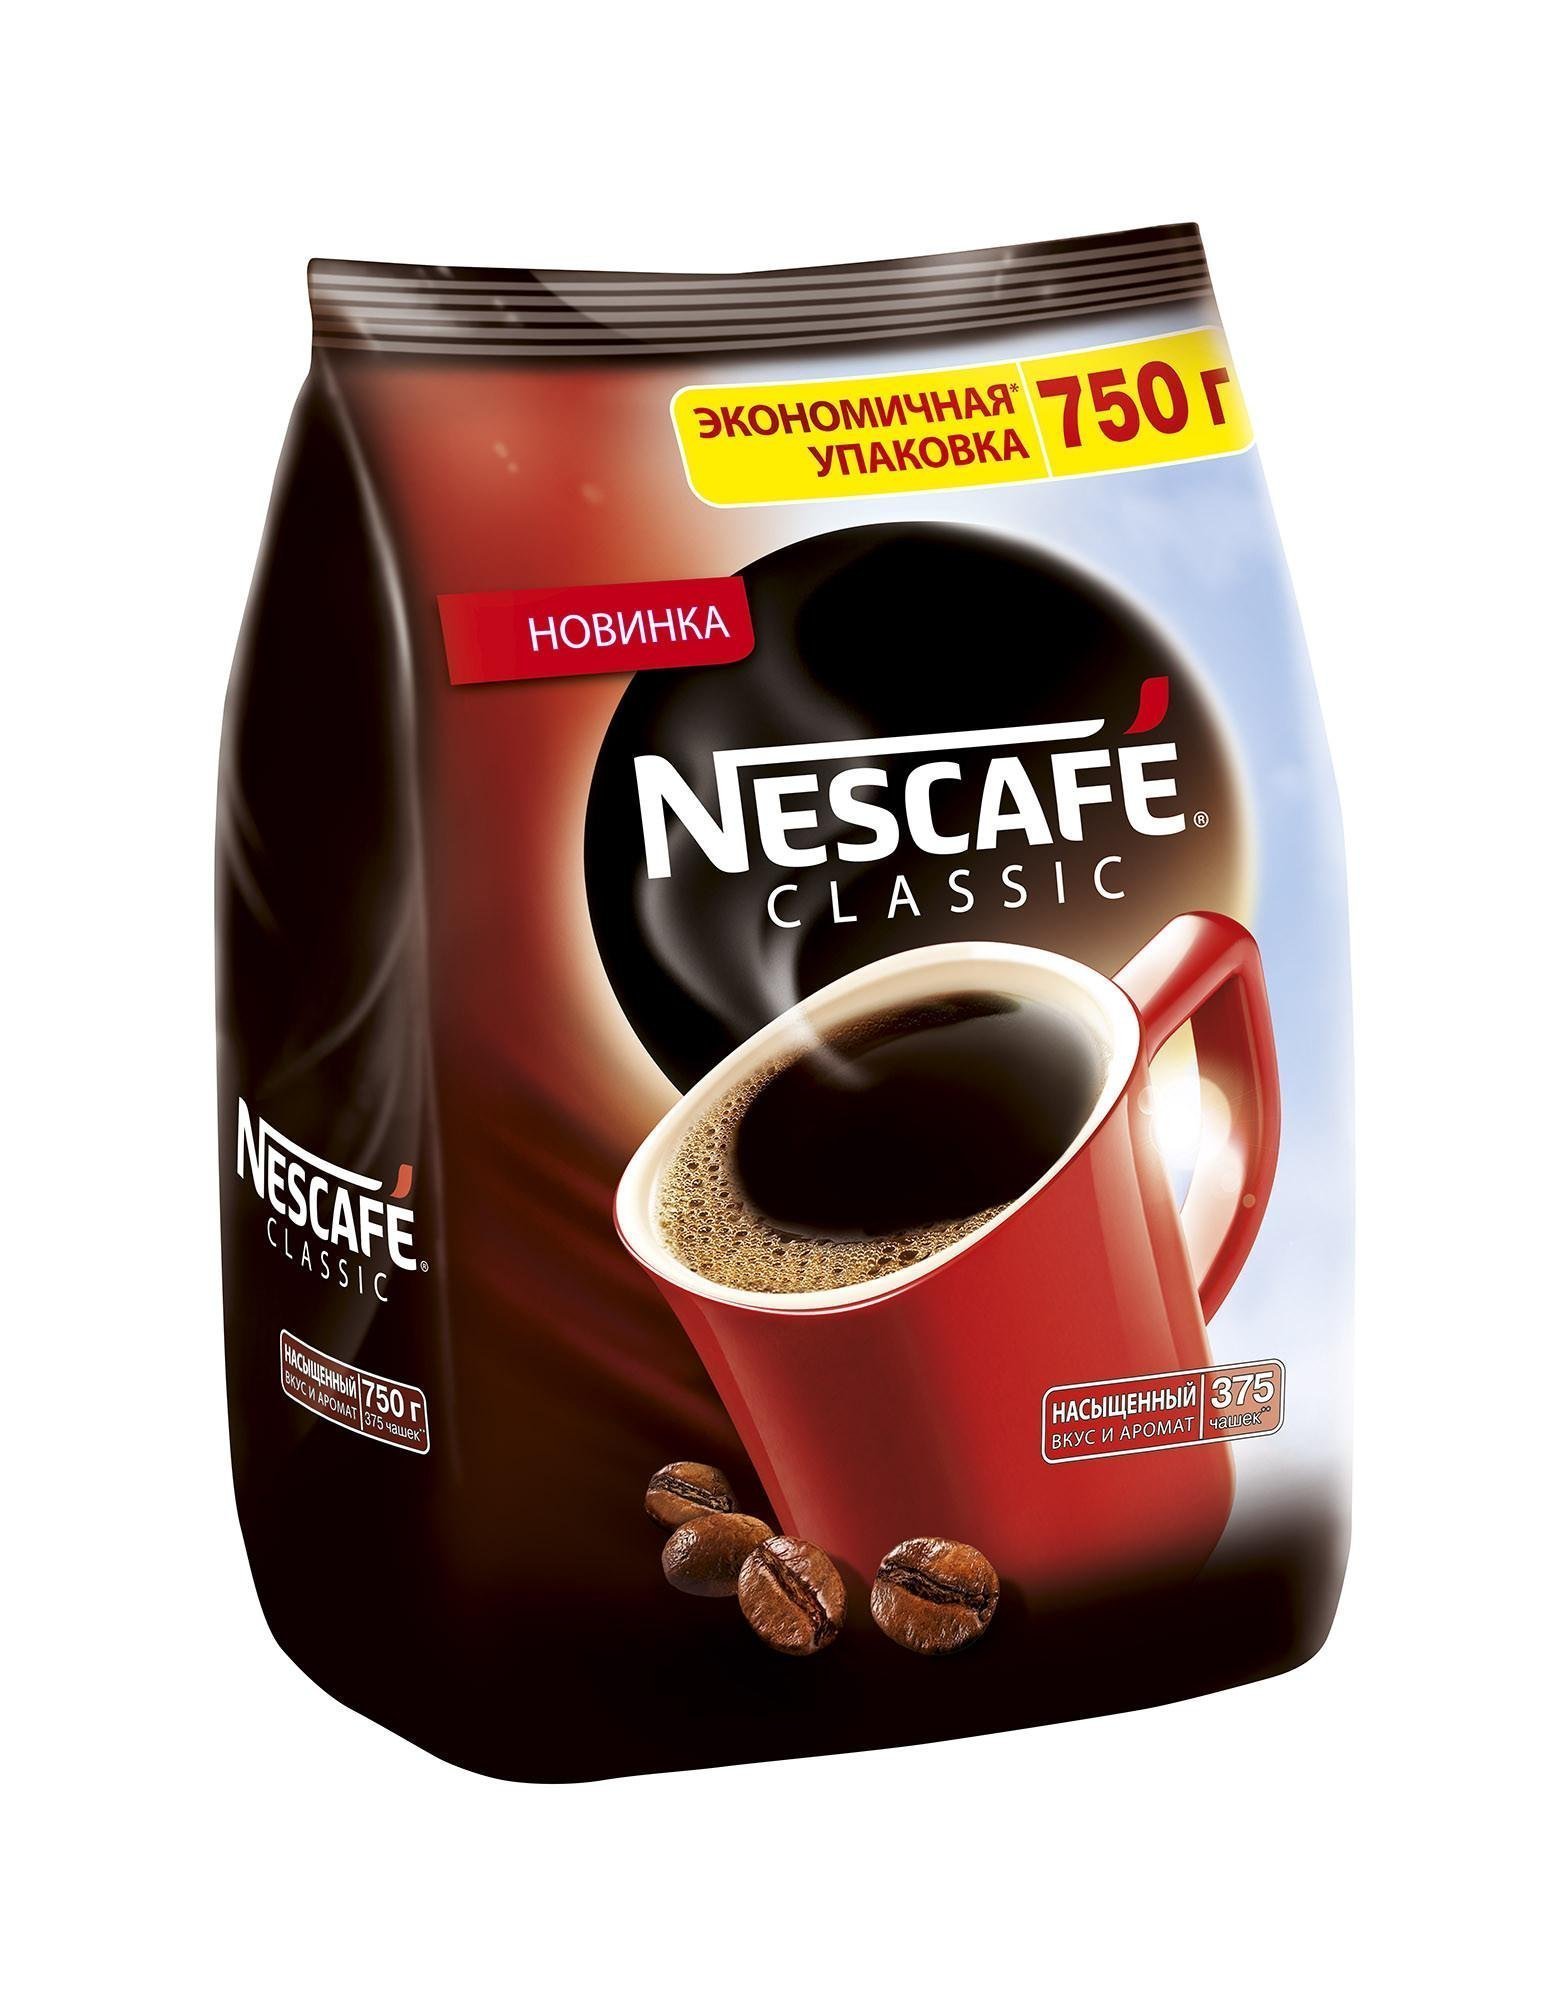 Лучший гранулированный кофе. Кофе Нескафе Классик 750 гр пакет. Nescafe Classic кофе растворимый гранулированный пакет 750г. Кофе Нескафе растворимый 750г.